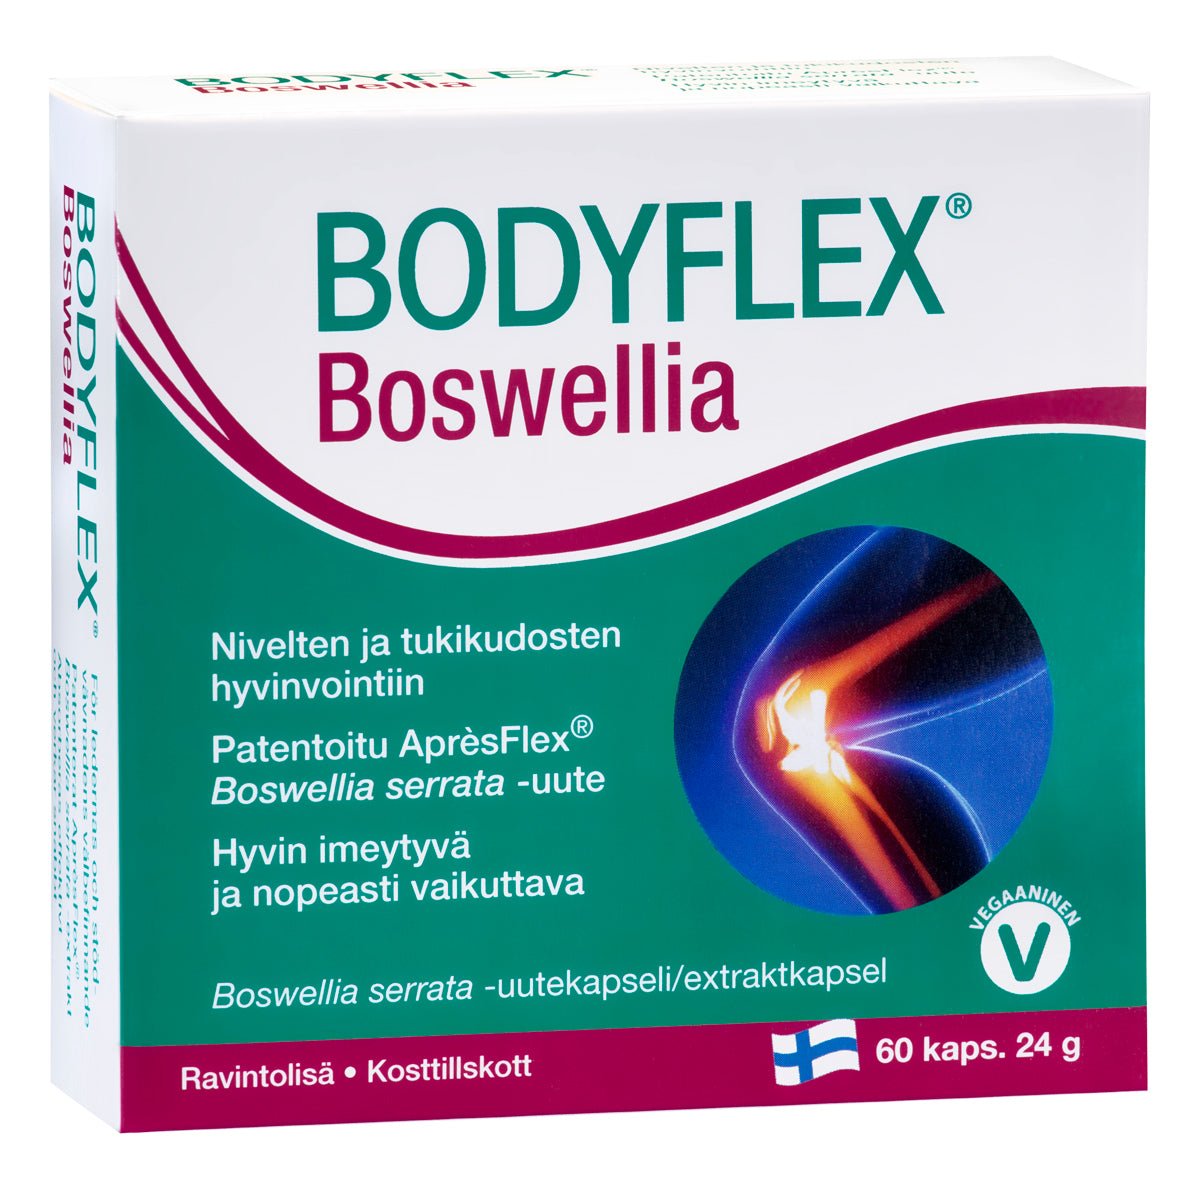 Hankintatukku Bodyflex Boswellia, 60 kaps.